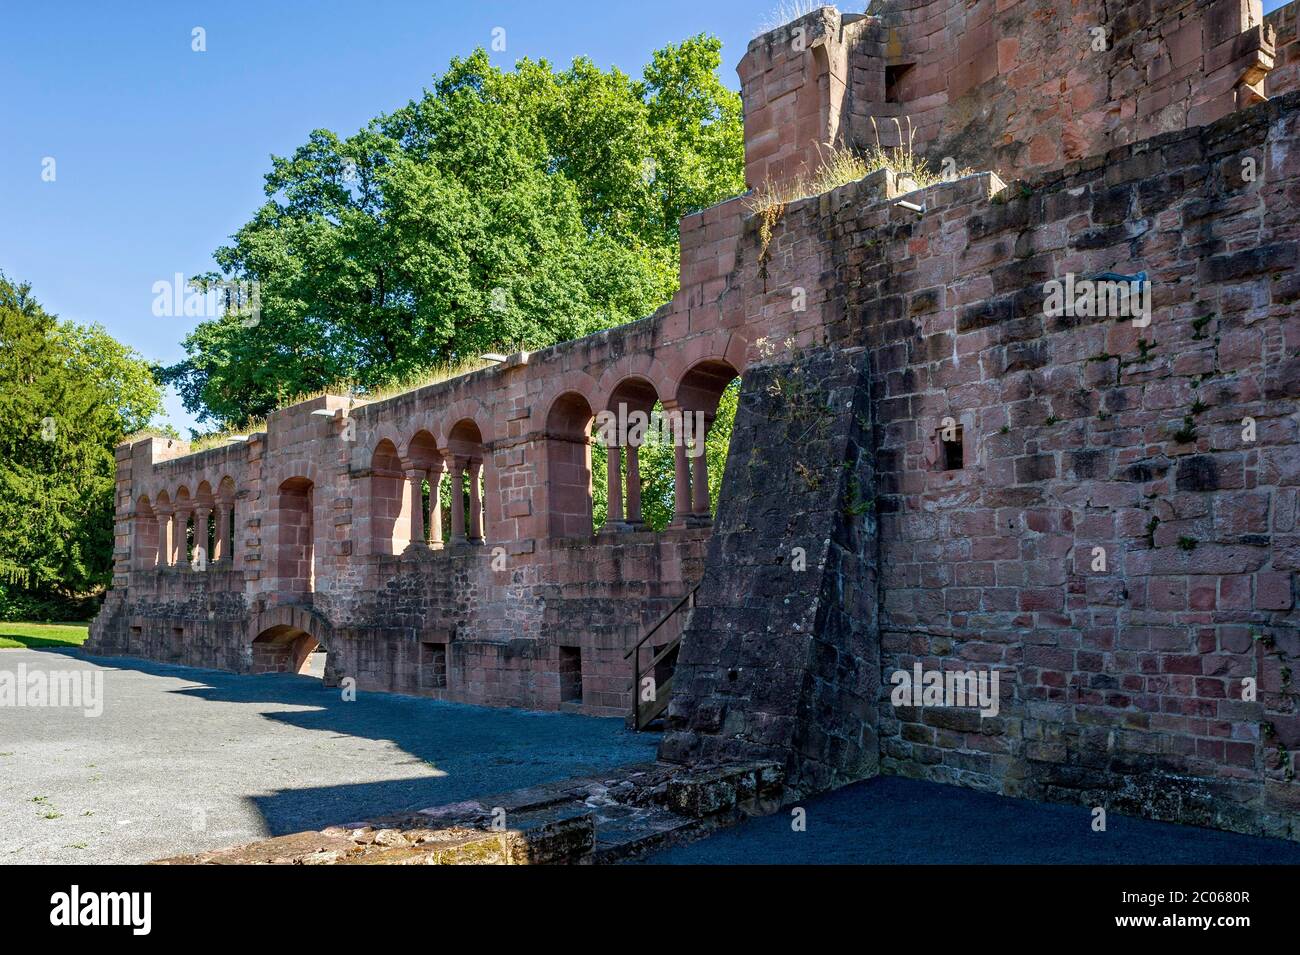 Mur du palais, ruines médiévales du château, palais impérial de l'empereur Friedrich I. Barbarossa, Stauferpfalz, Barbarossaburg, Gelnhausen, Hesse, Allemagne Banque D'Images